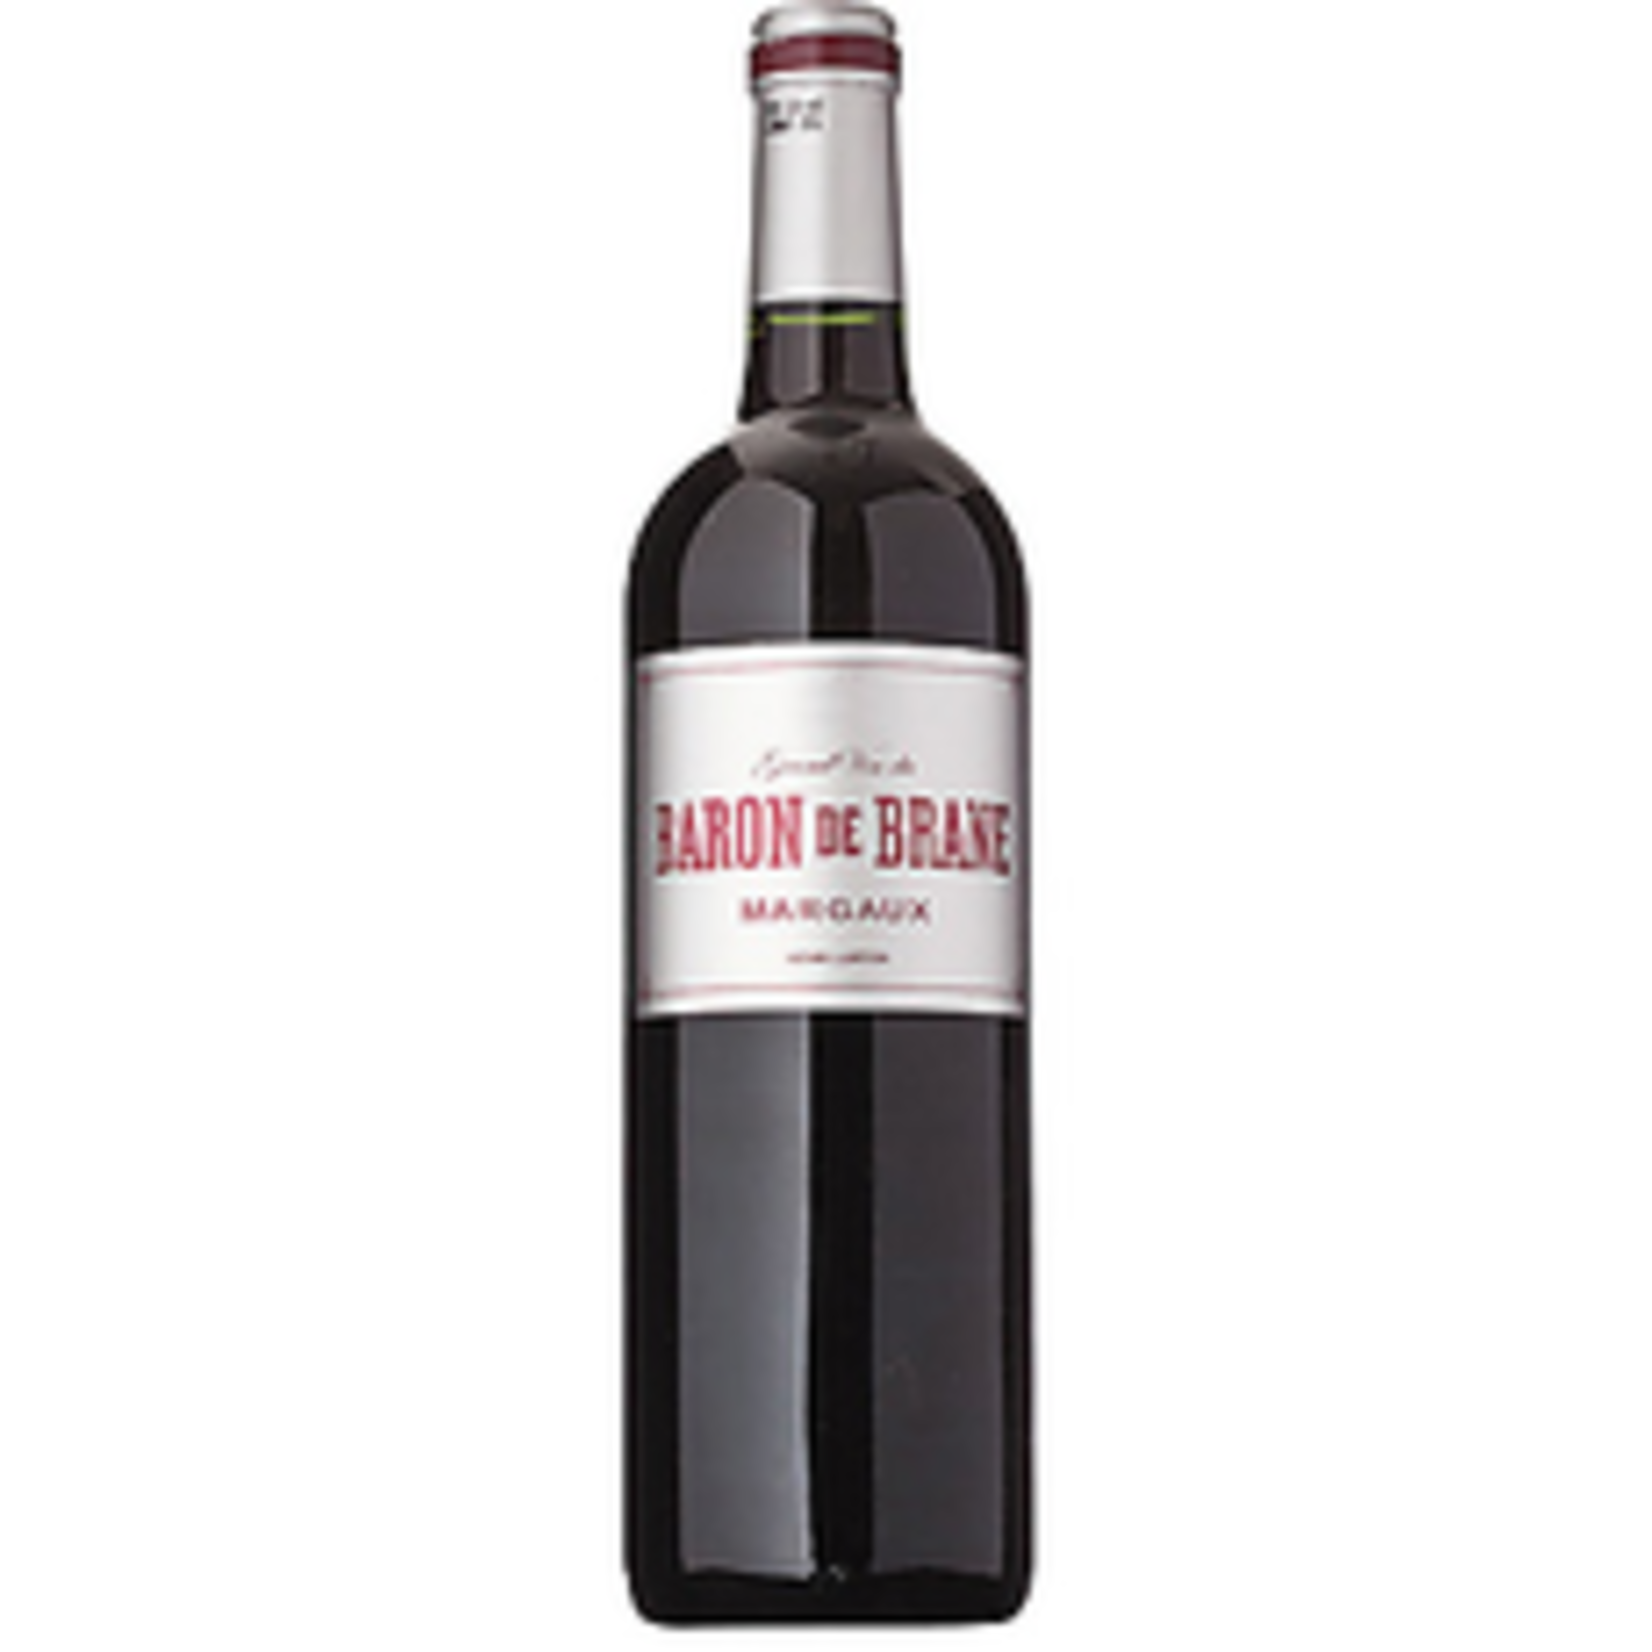 Wine Baron De Brane Margaux 2015